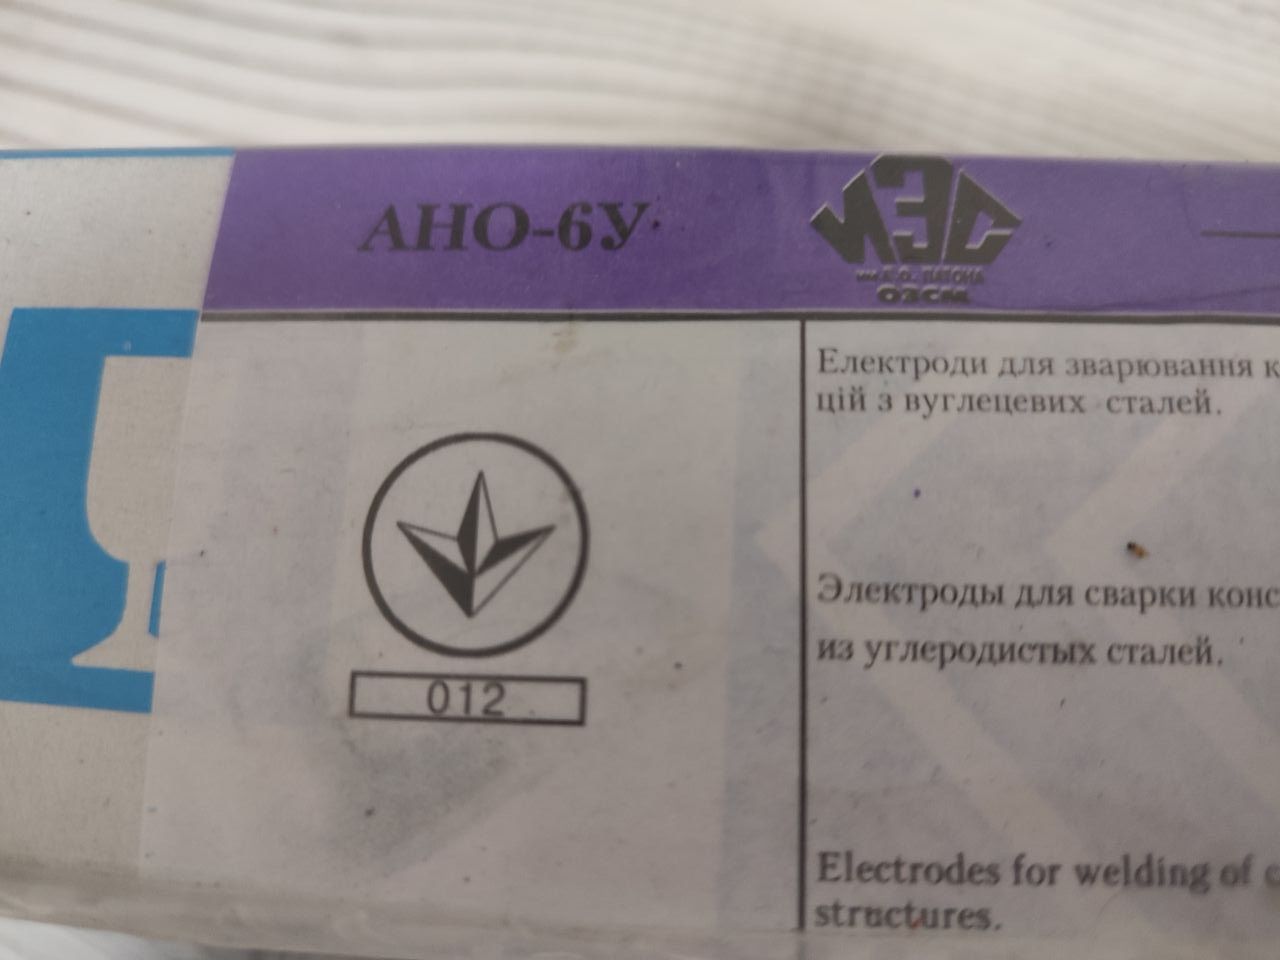 Електроди АНО-6У,  вага 5 кг, ПАТОН (Україна)